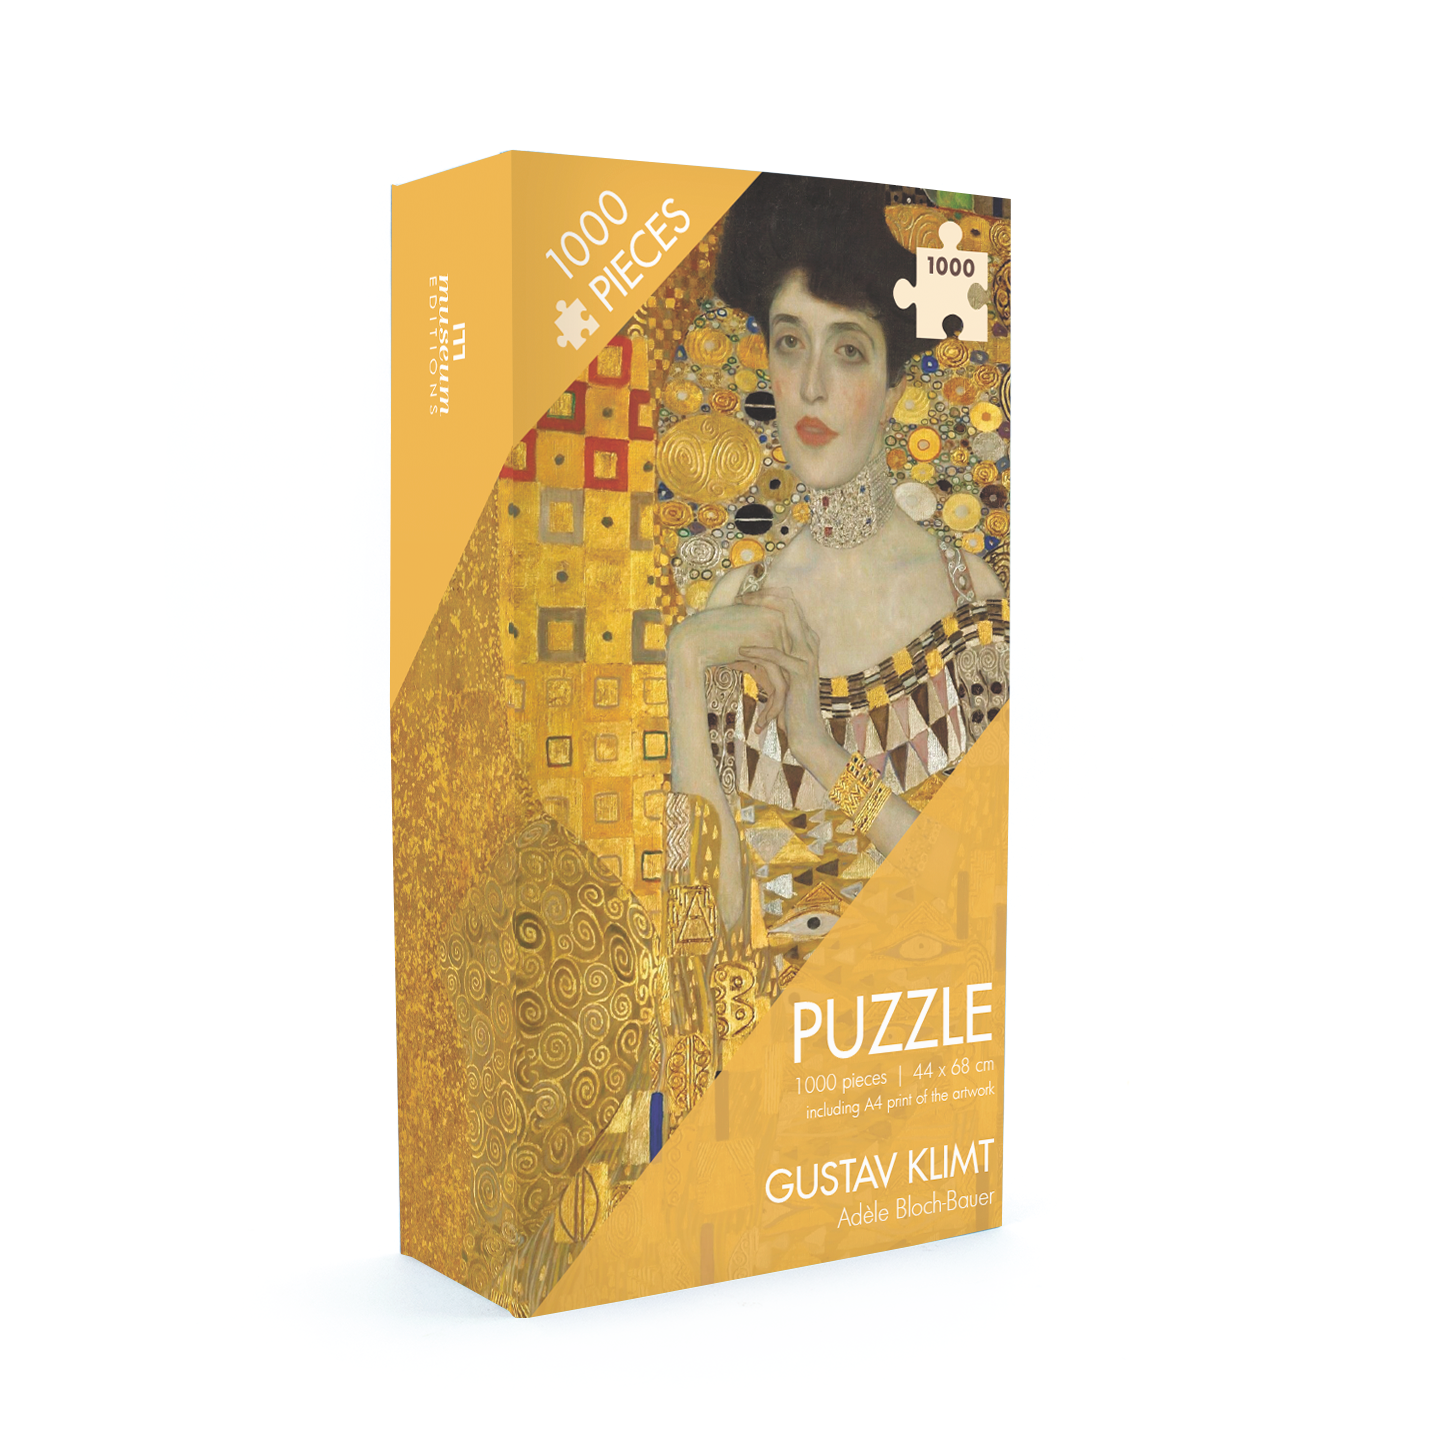 Puzzle, 1000 Pieces, Gustav Klimt, Adele Bloch-Bauer